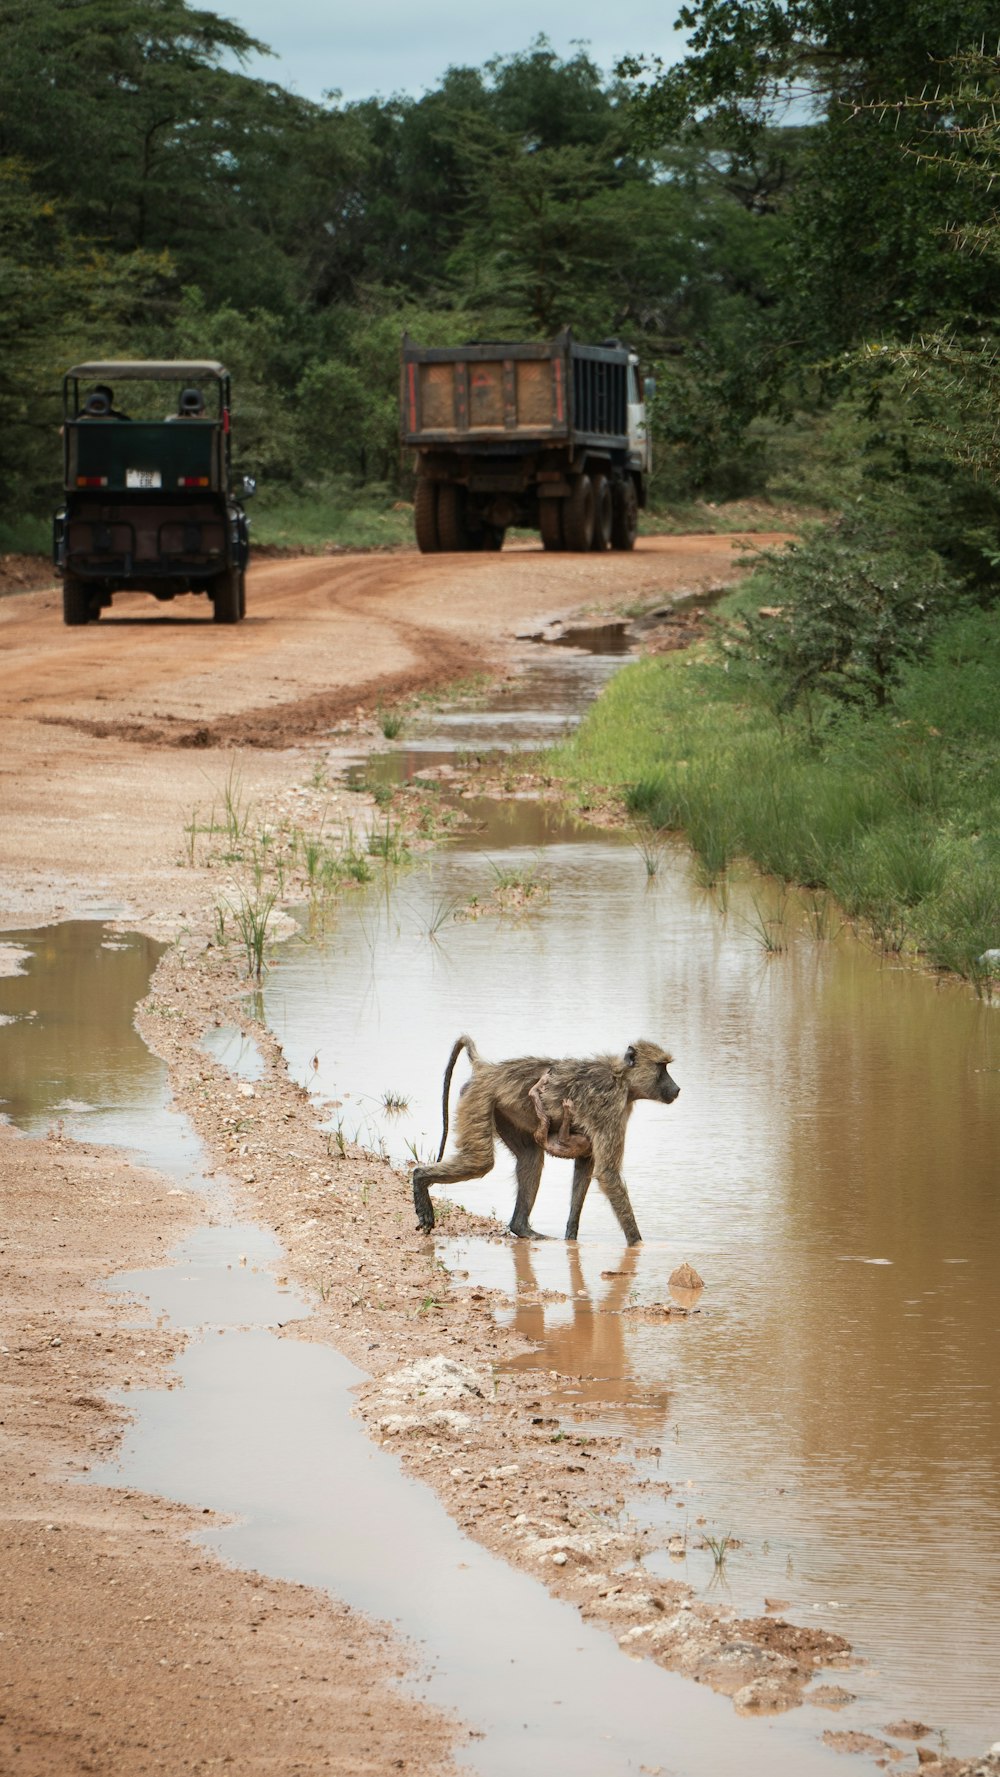 a baby monkey walking across a muddy road